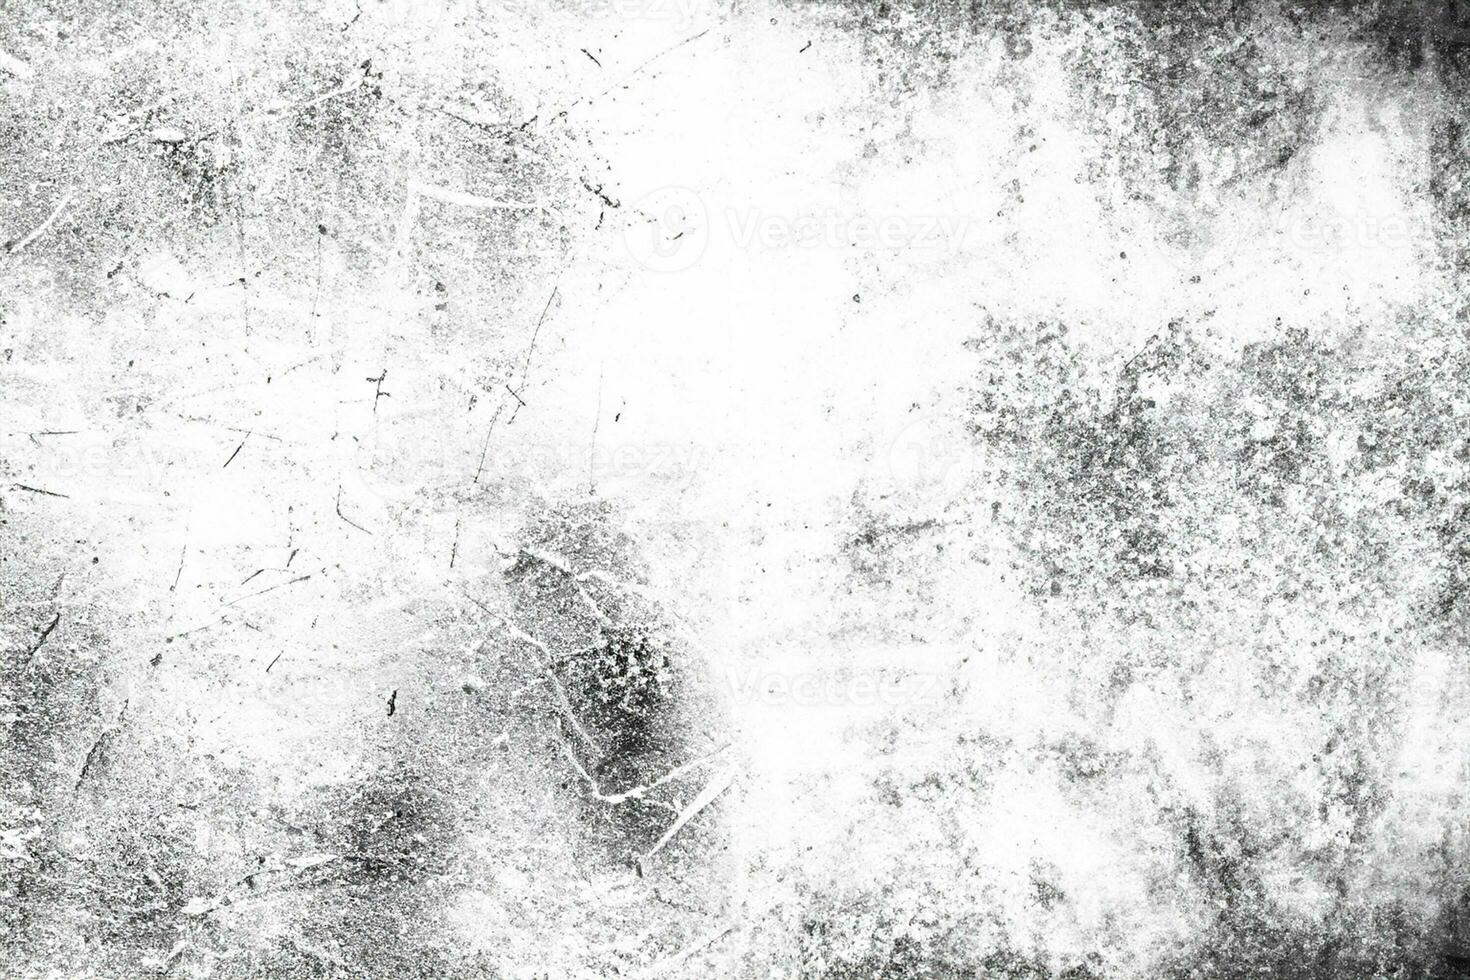 polvo y fondos texturados rayados.grunge fondo de pared blanco y negro.fondo abstracto, metal viejo con óxido. superponga la ilustración sobre cualquier diseño para crear un efecto vintage grungy y extra foto